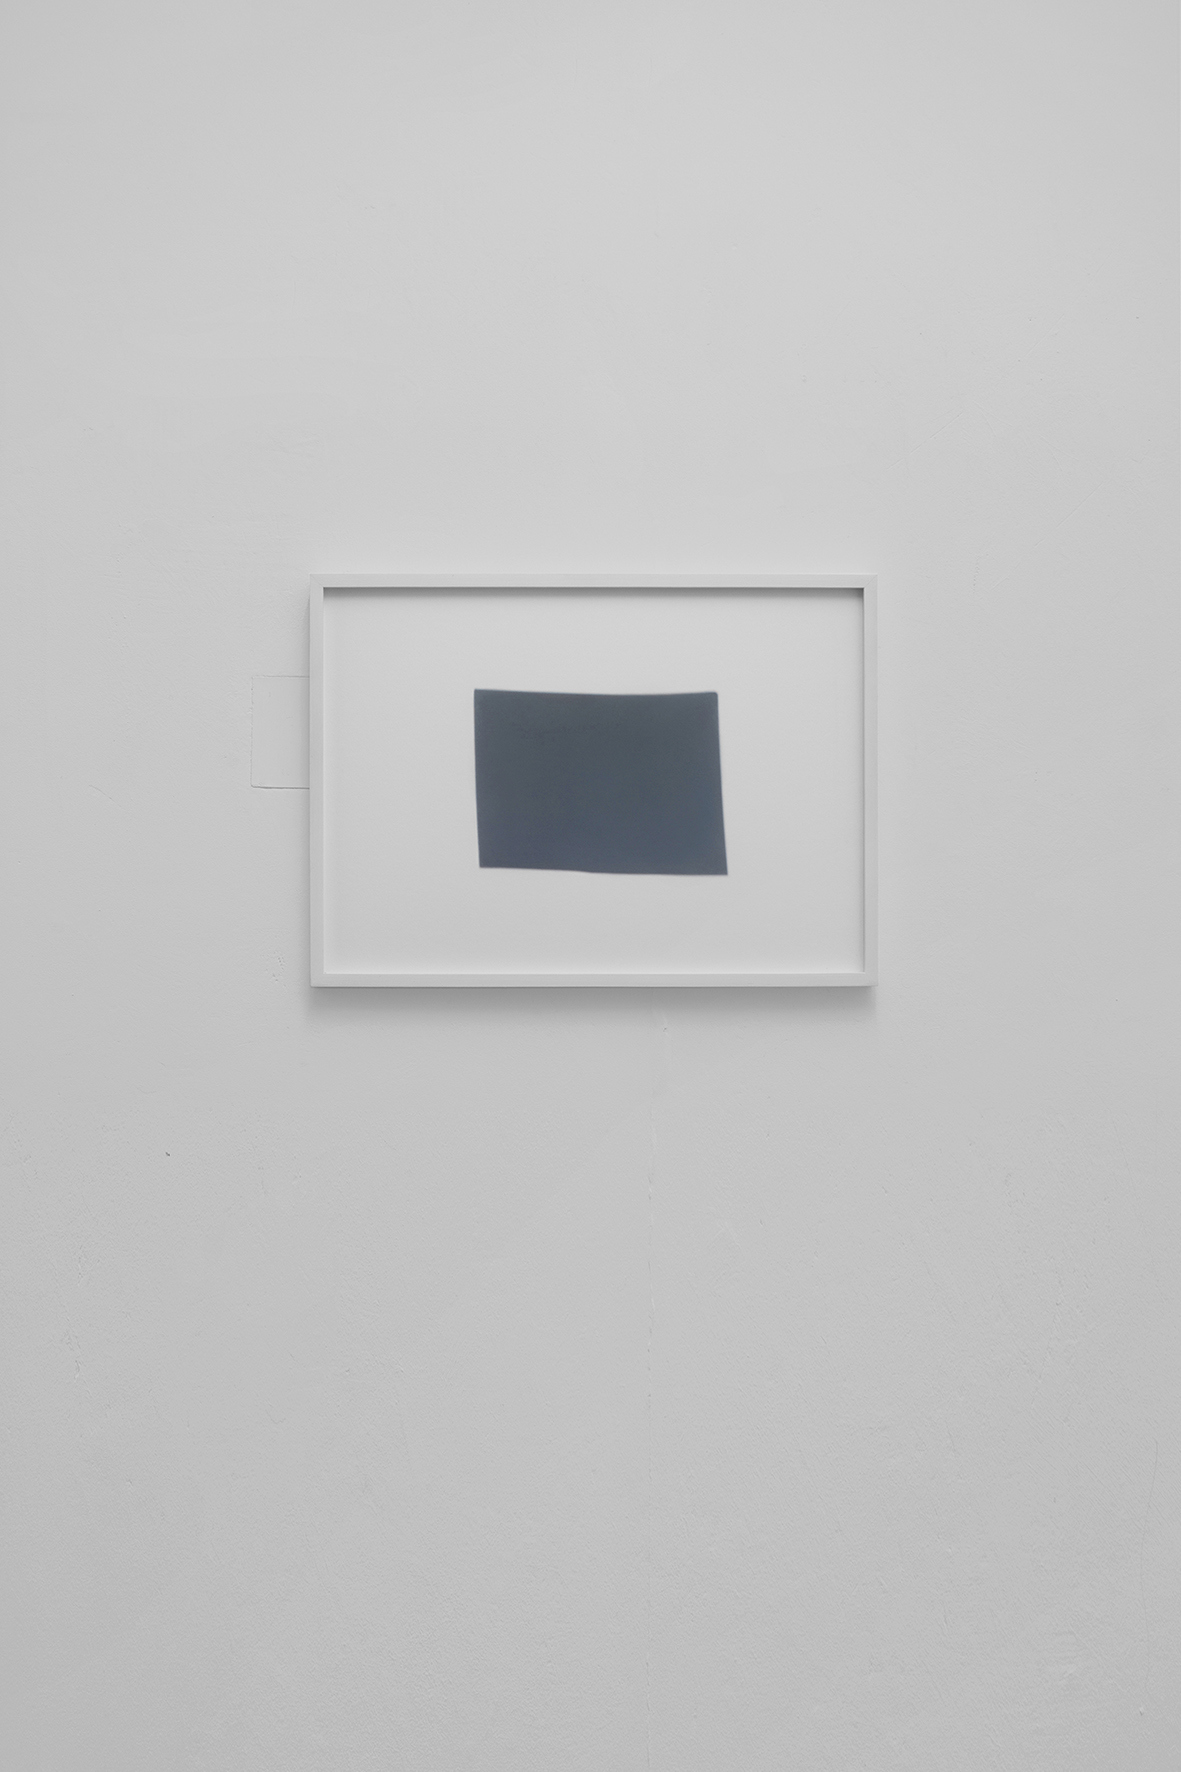 Schatten einer Fotografie, 2020, pigment print, framed, 30 x 42 x 1.5 cm